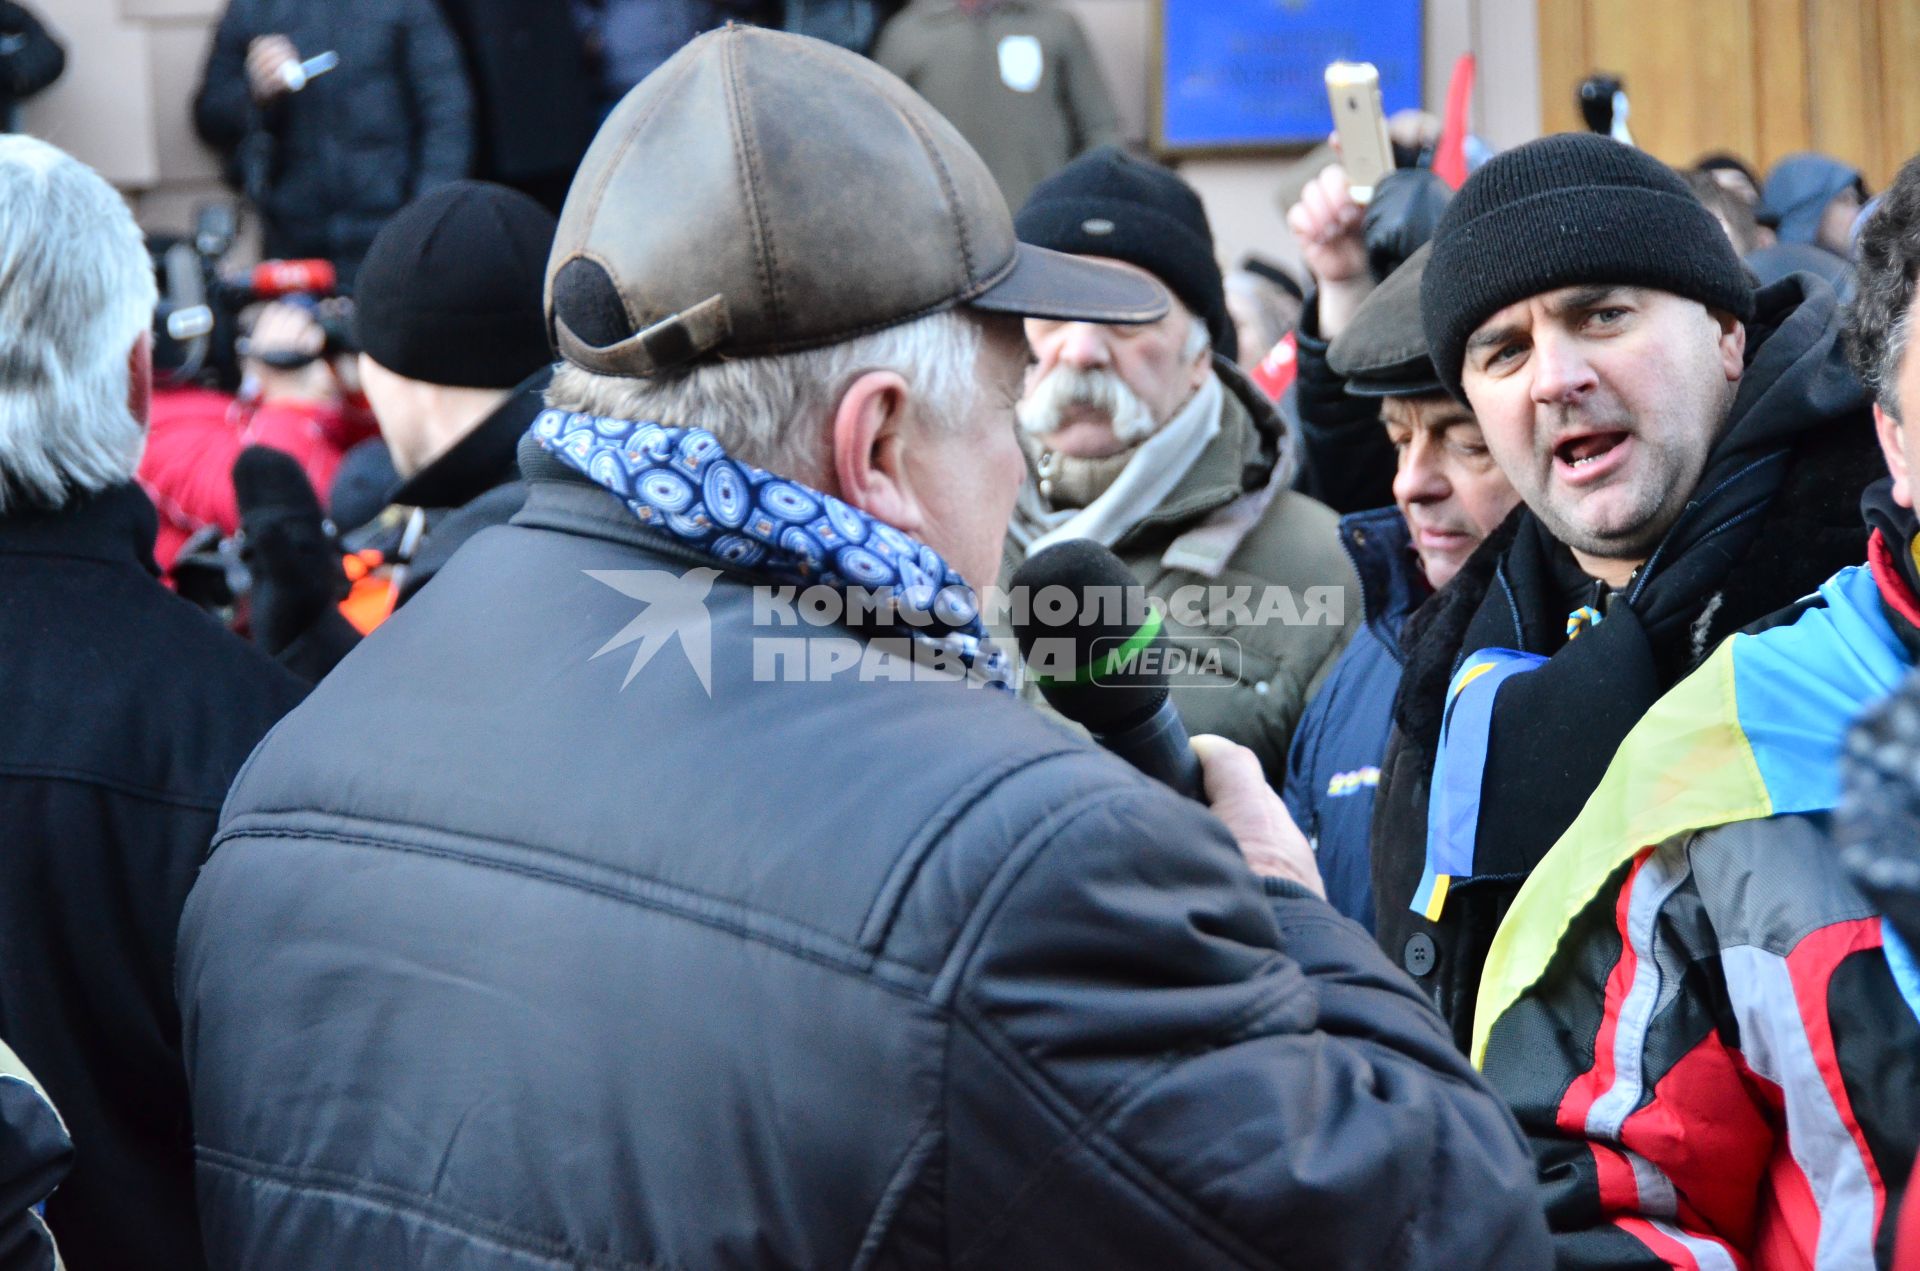 Евромайдан. Акция сторонников евроинтеграции Украины у здания Верховной Рады. На снимке: один из активистов дает интервью.